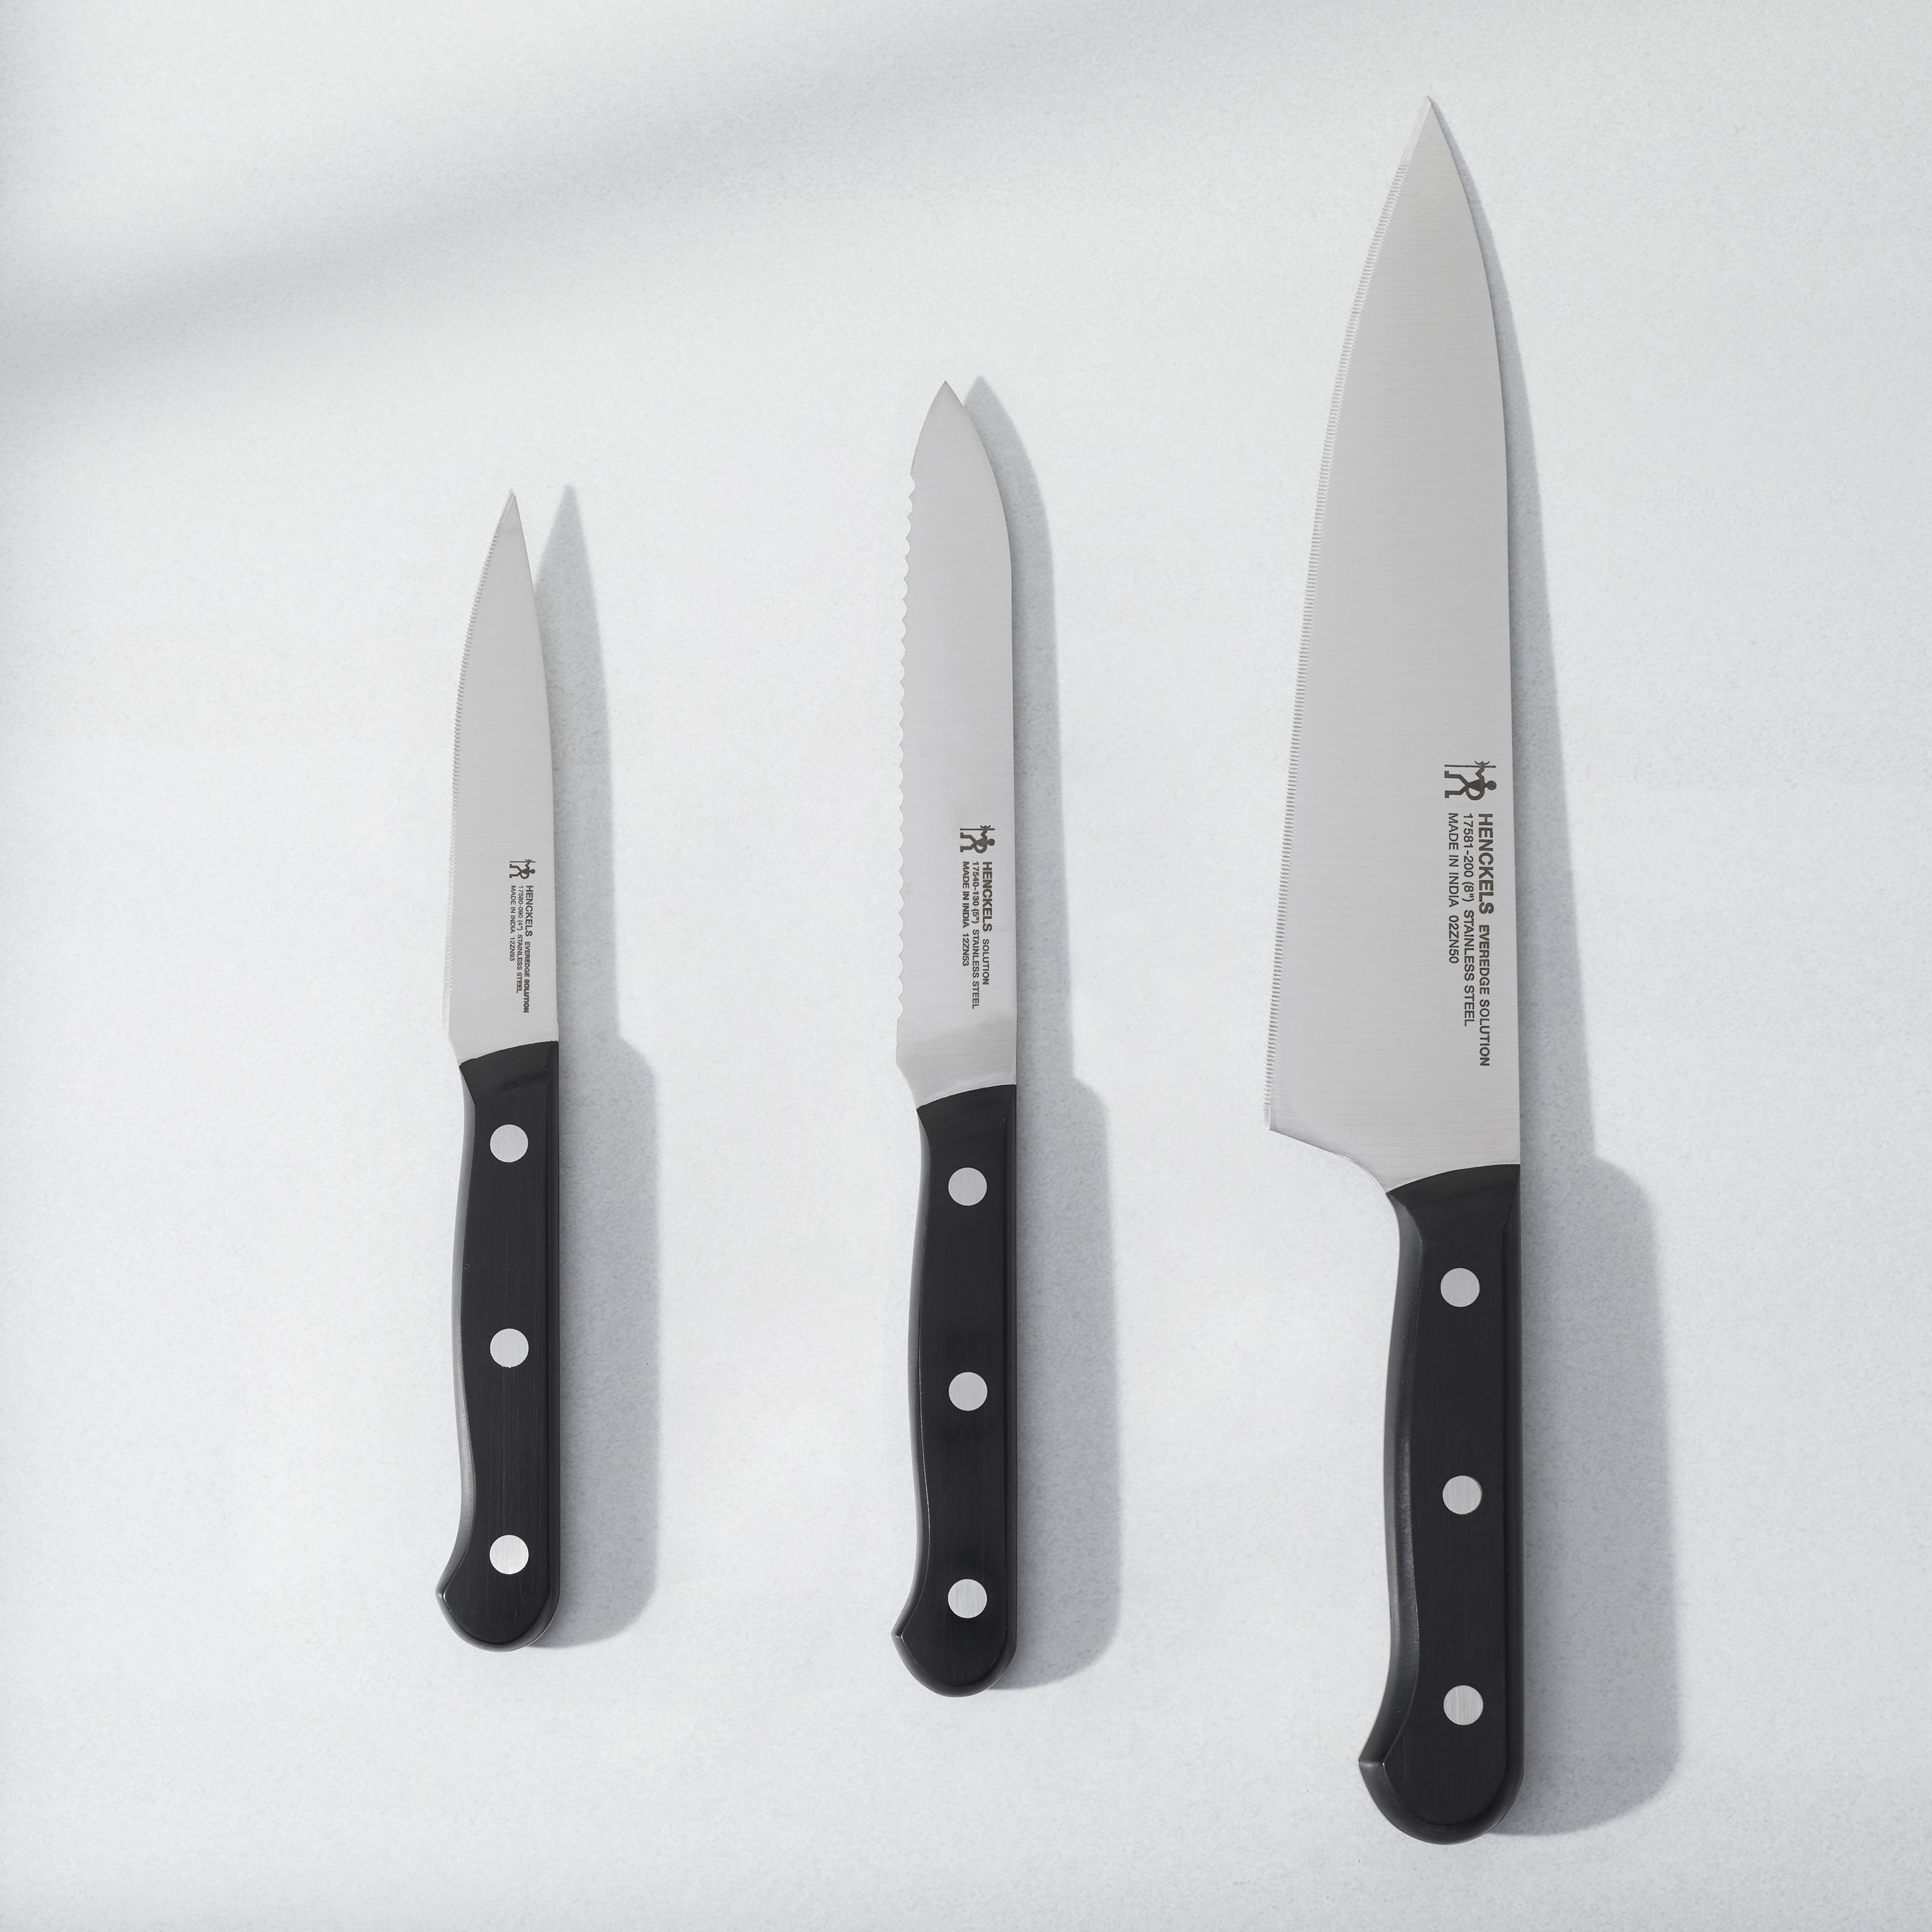 Henckels Dynamic Ever Edge Never Needs Sharpening 3 pc Starter Knife Set  NEW